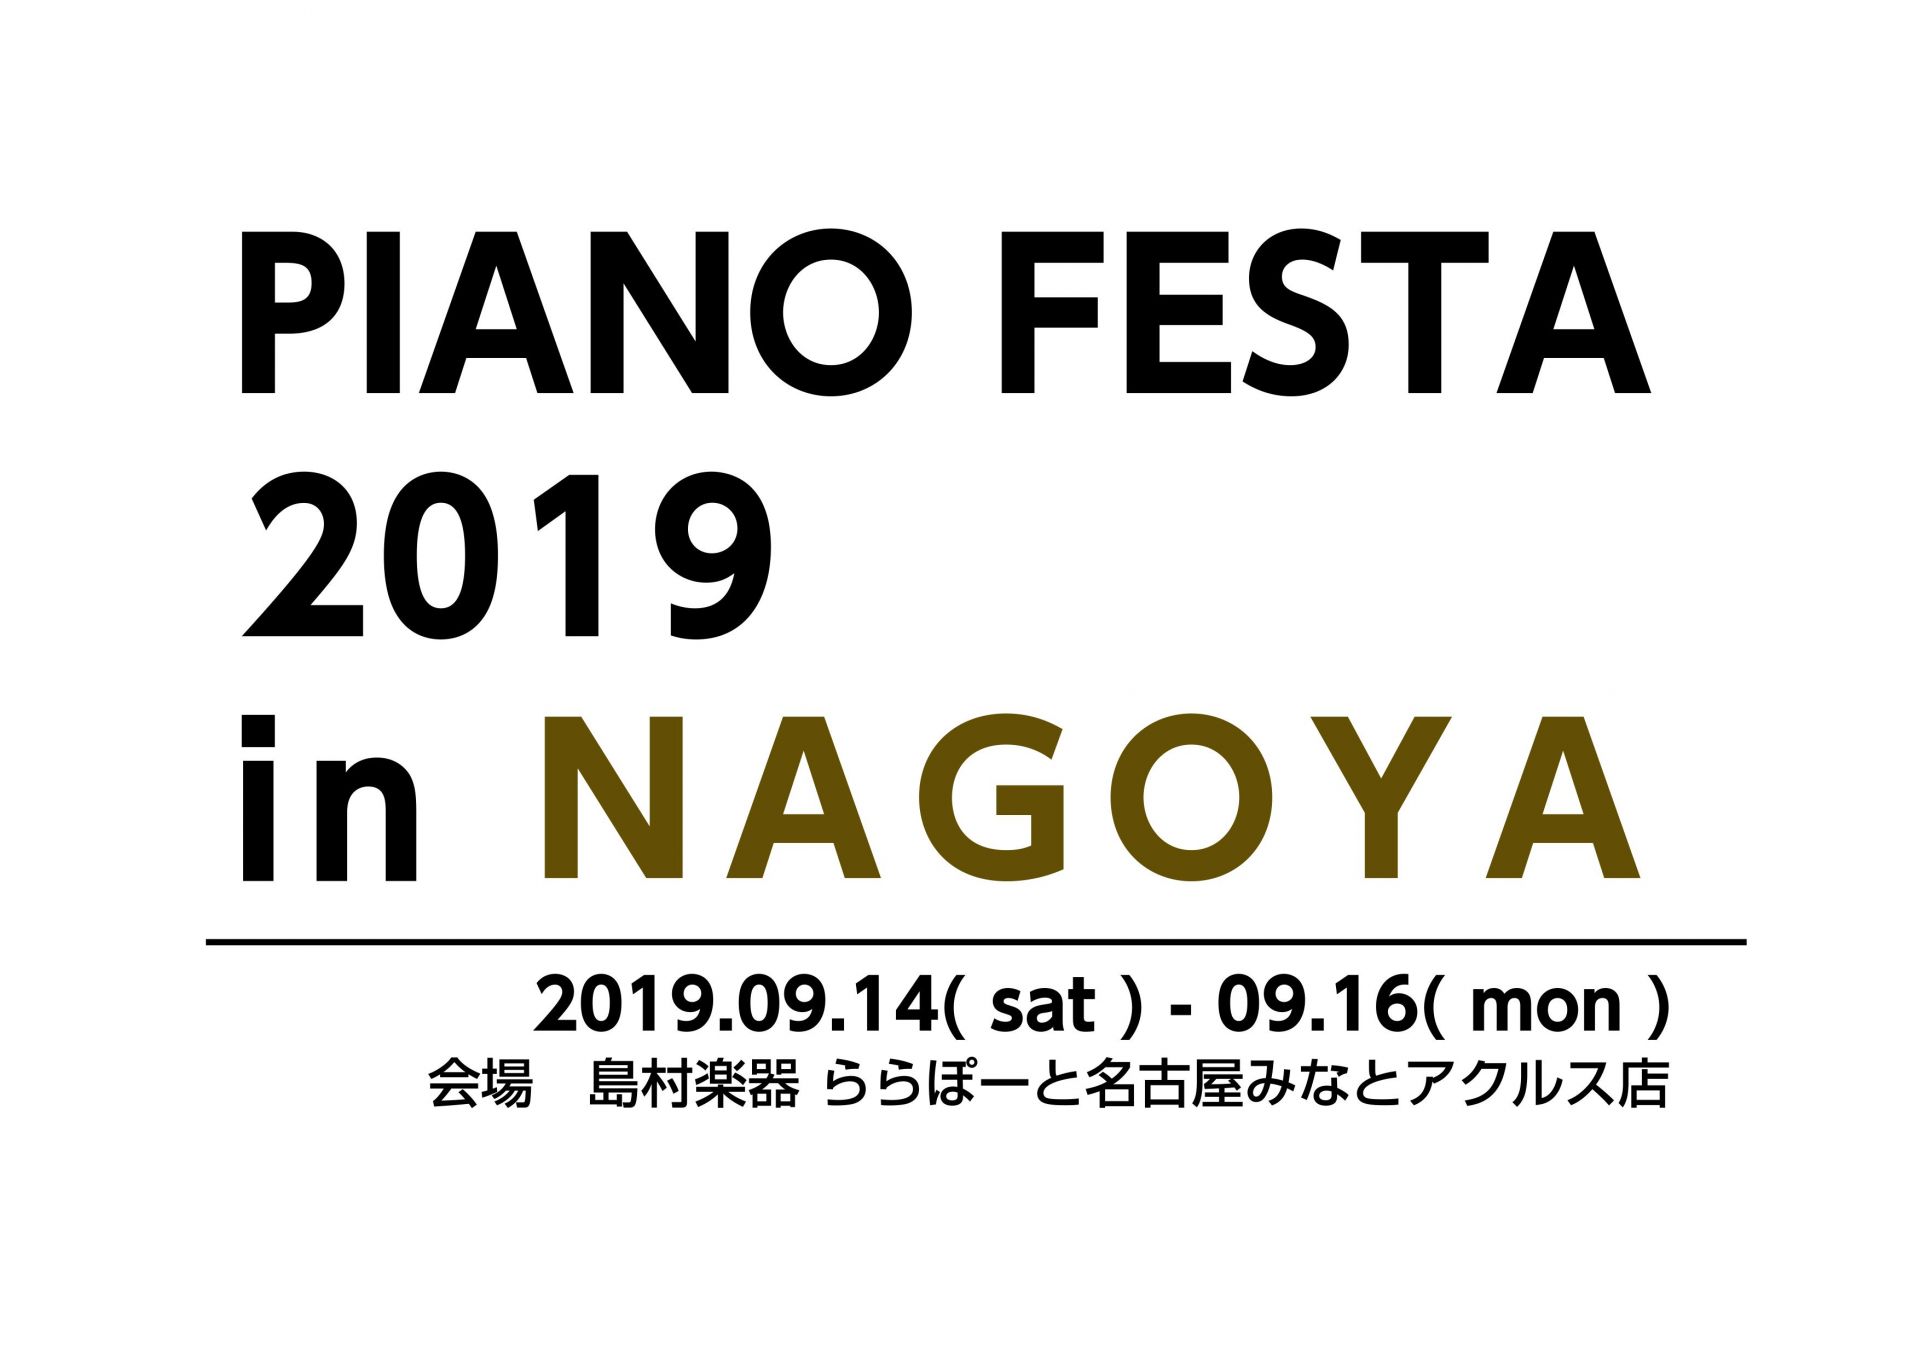 9/15（日） 紙芝居&ピアノコンサート ピアノのせかいのだいぼうけん 【PIANO FESTA 2019 in NAGOYA】